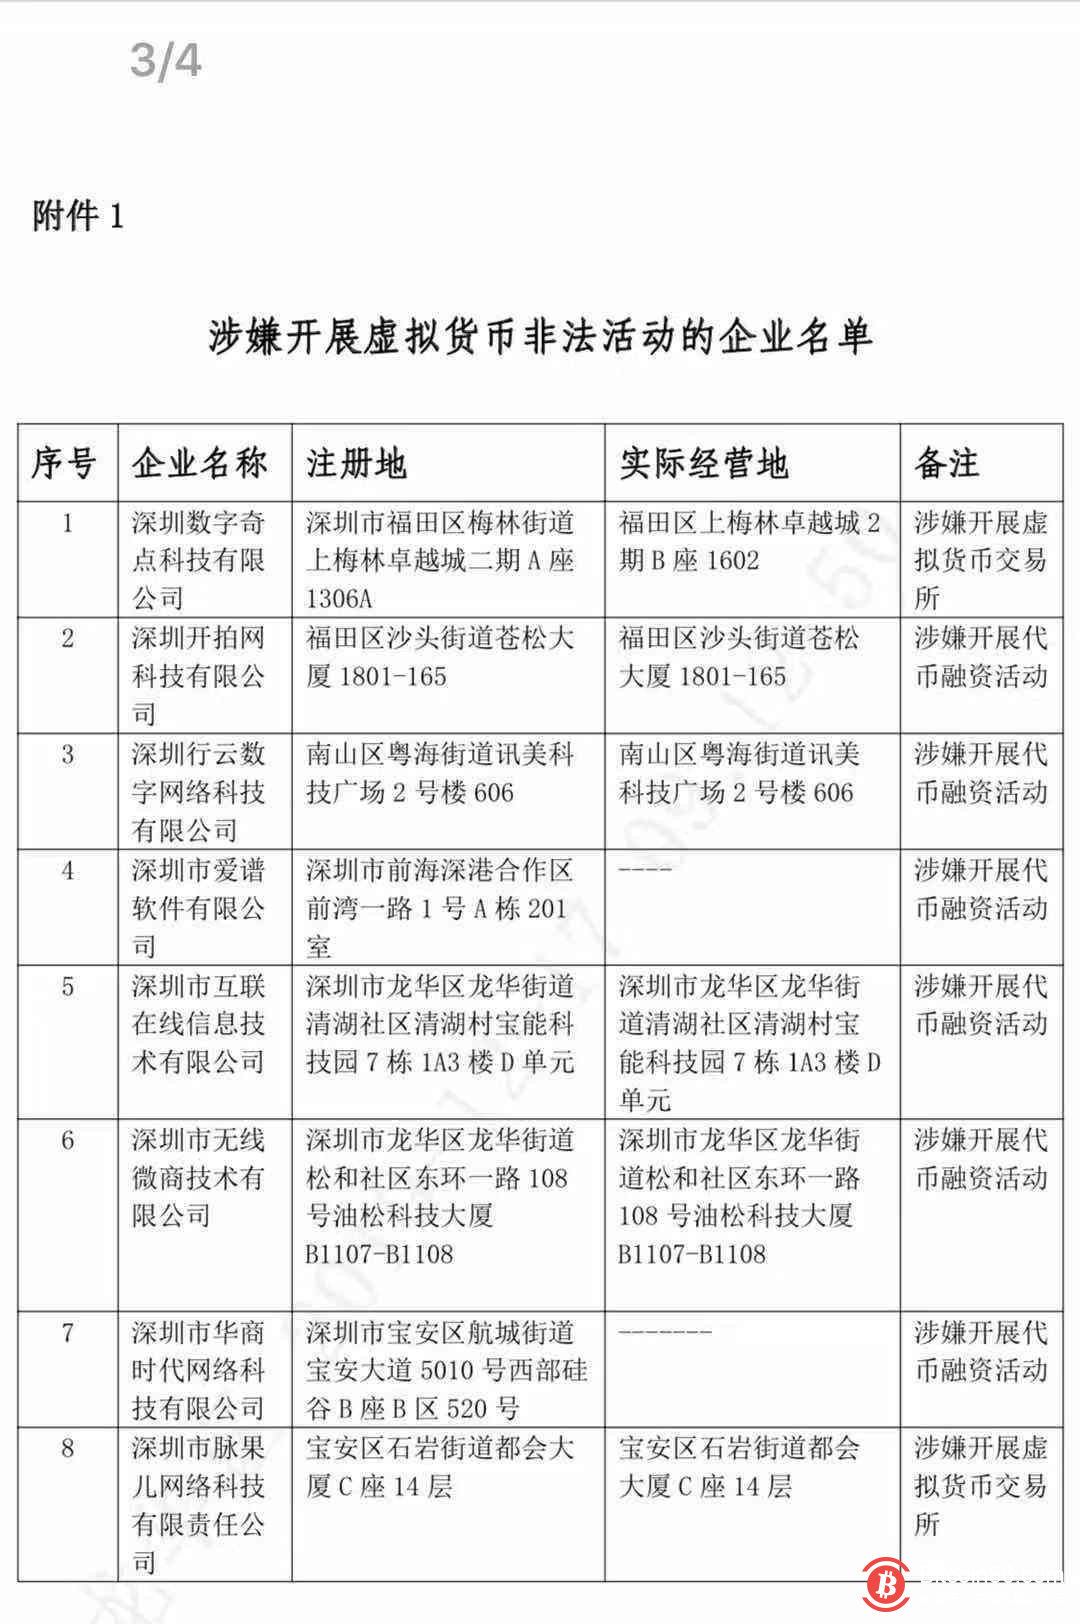 深圳市金融监管局召开虚拟货币非法活动专项整治会议